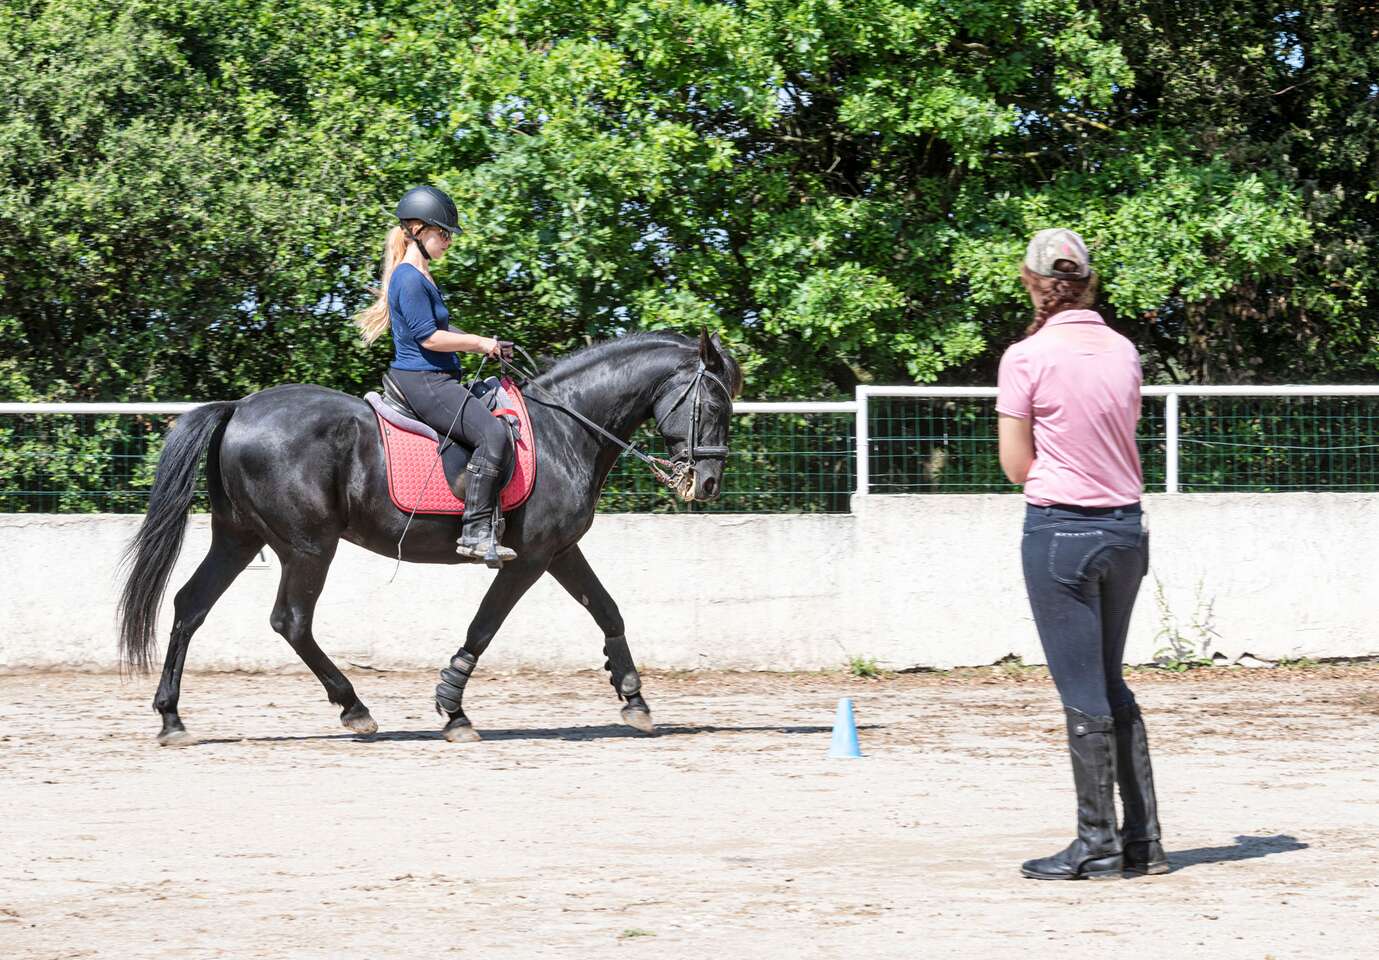 OBĽÚBENÉ: Lekcie jazdenia na koni s inštruktorom pre deti aj dospelých v Bratislave